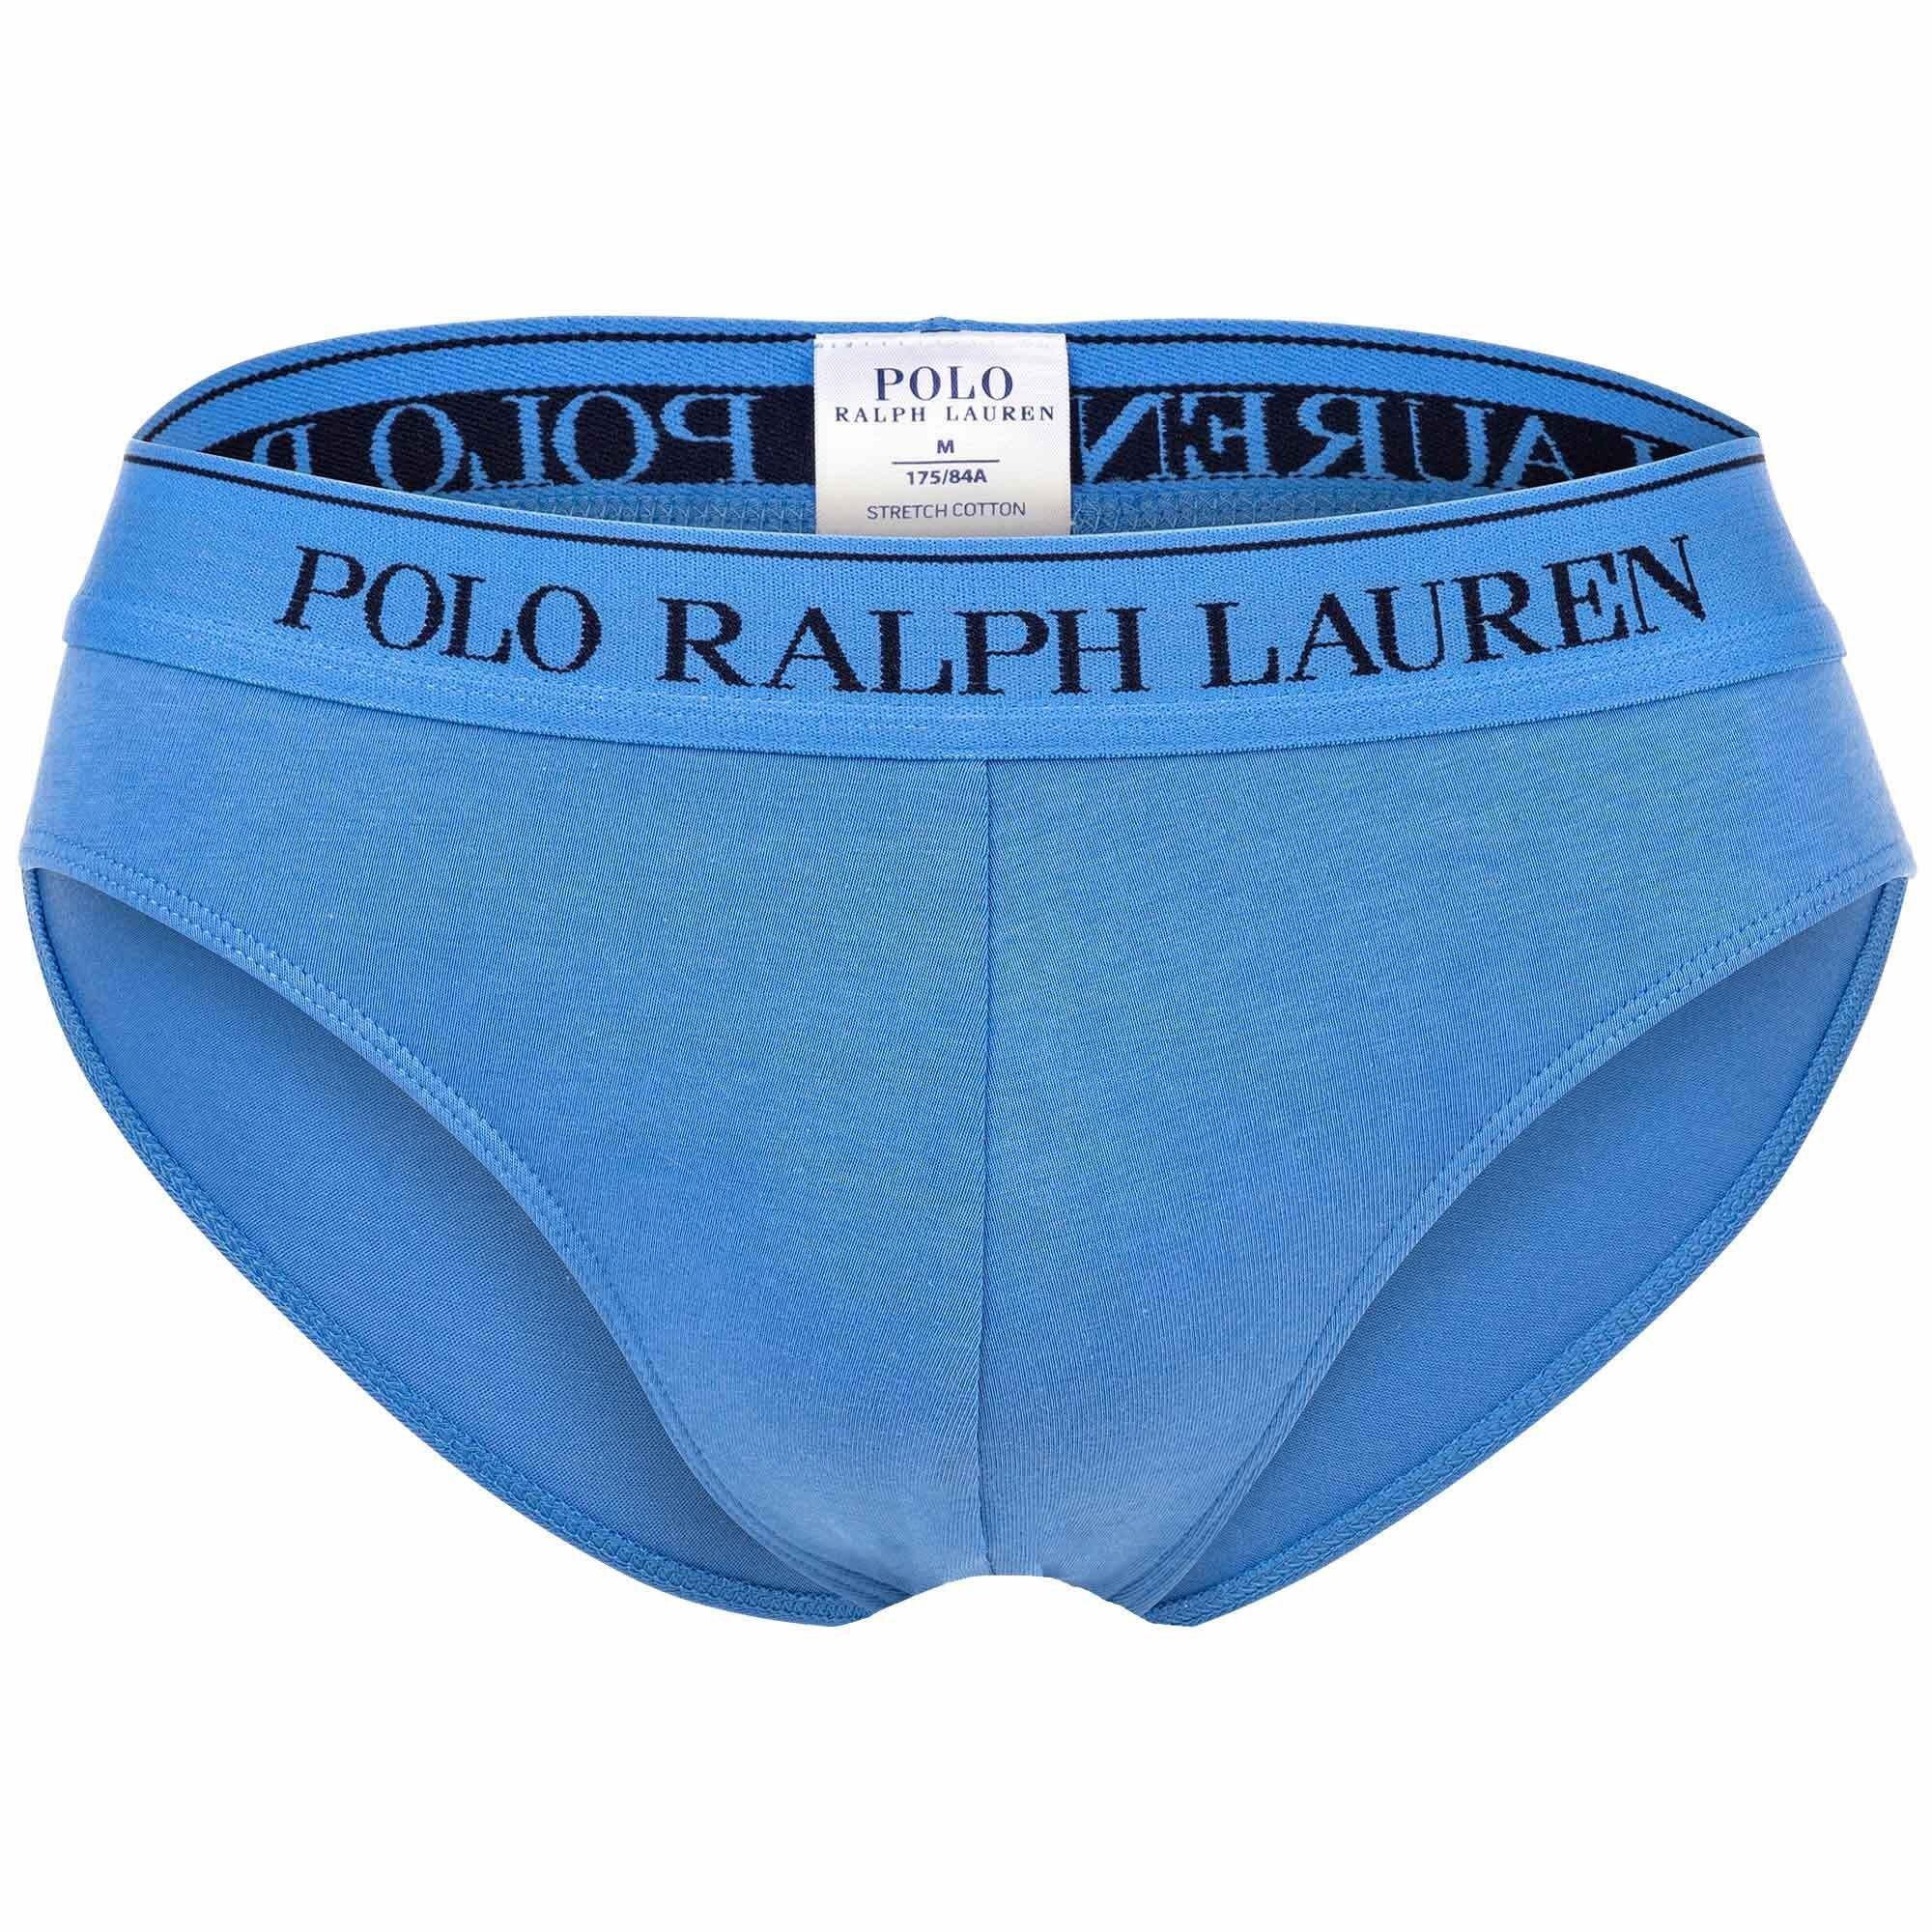 Polo Ralph Lauren Slip Männer Unterhose Brief Low Herren Rise Slip Blau/Dunkelblau